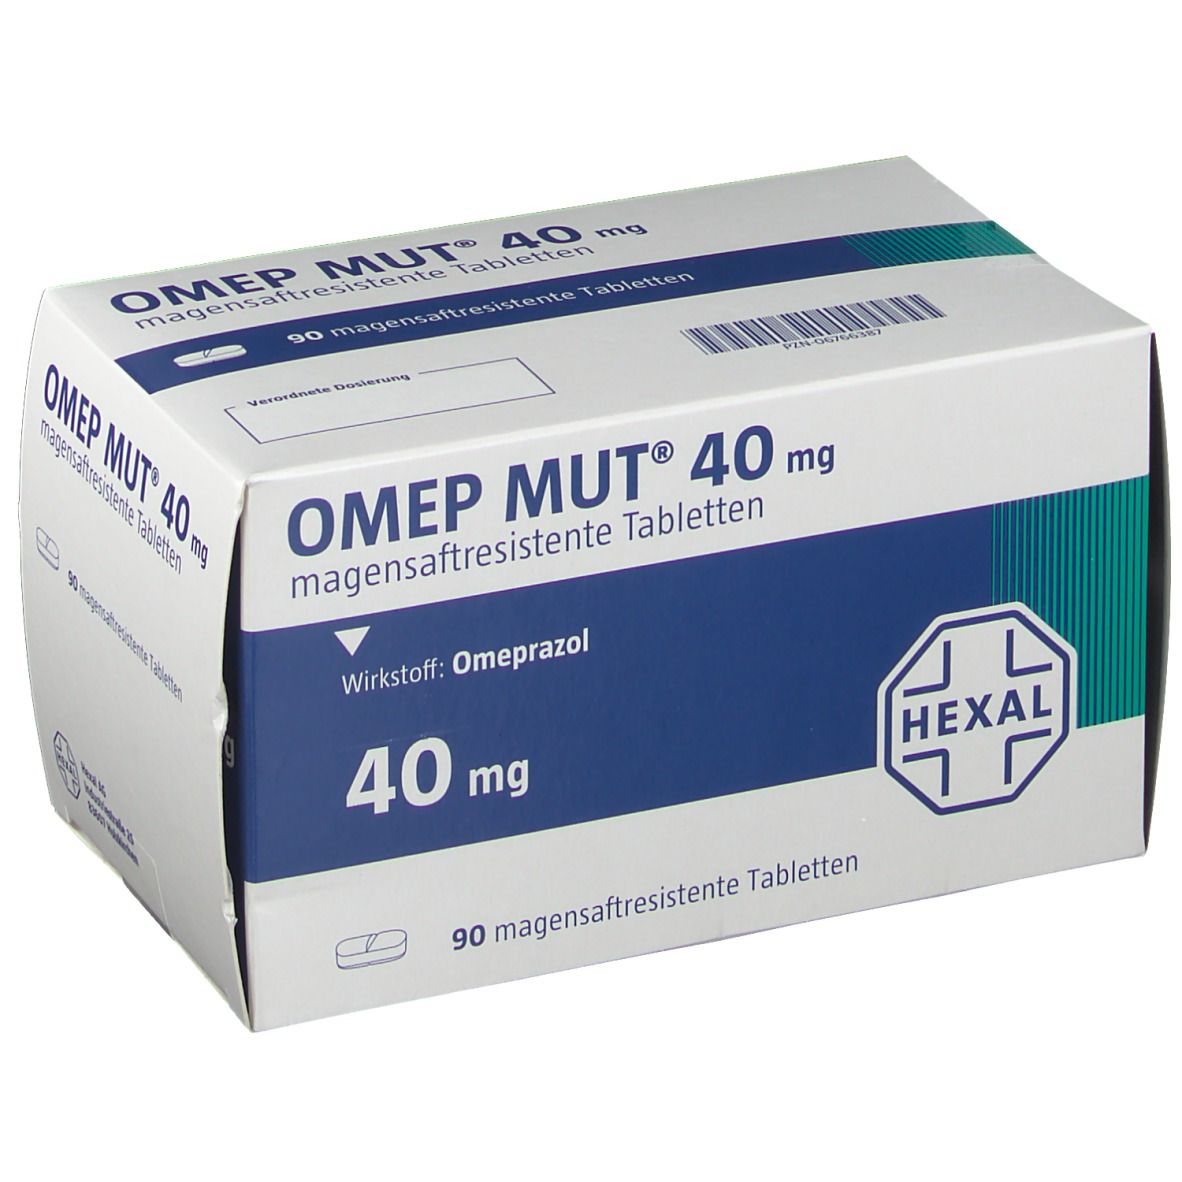 OMEP® MUT® 40 mg